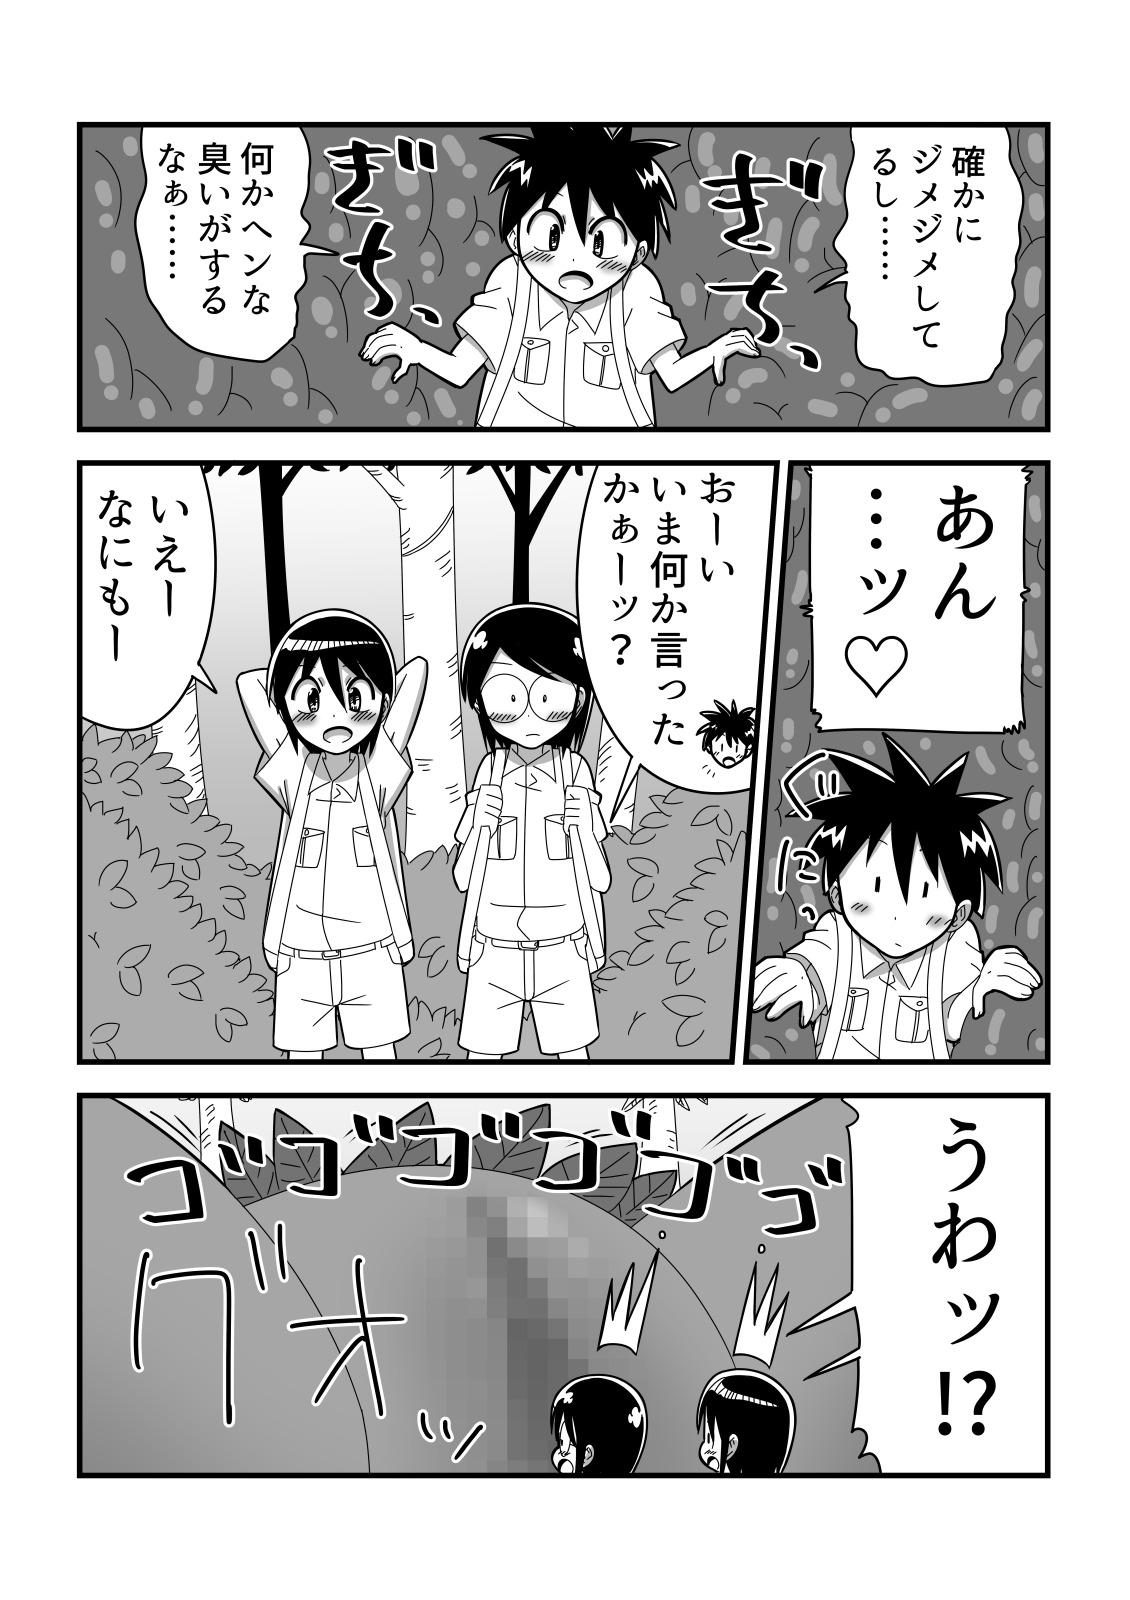 Roughsex Jingai OneShota Manga Tsumeawase Shuu Vol. 1 - Original Teentube - Page 6